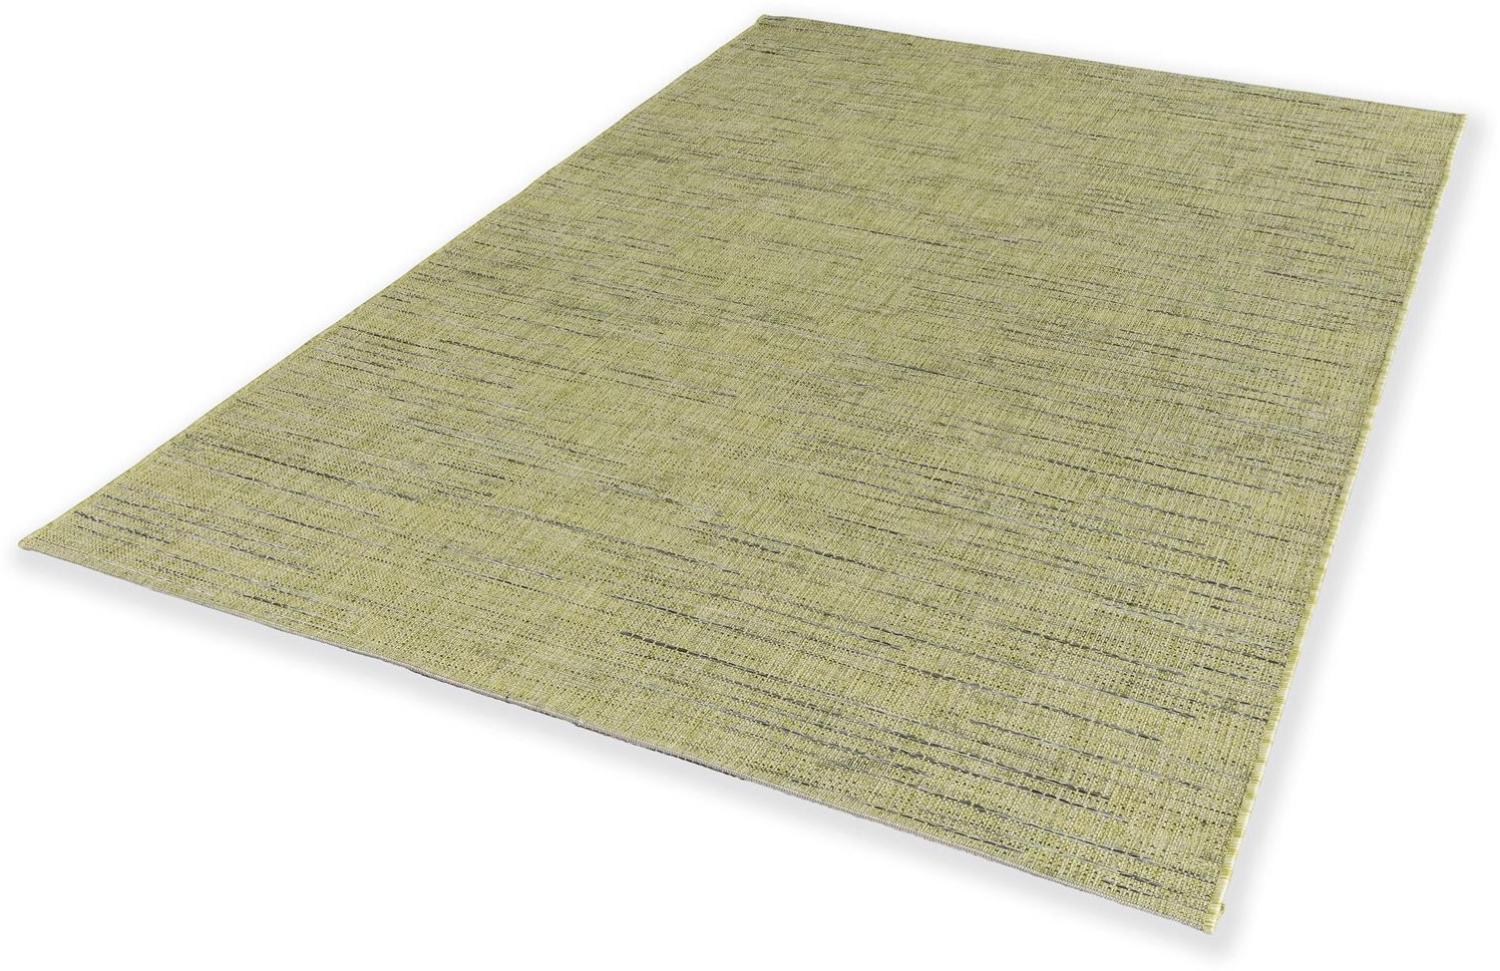 Teppich in grün aus 100% Polypropylen - 230x160x0,5cm (LxBxH) Bild 1